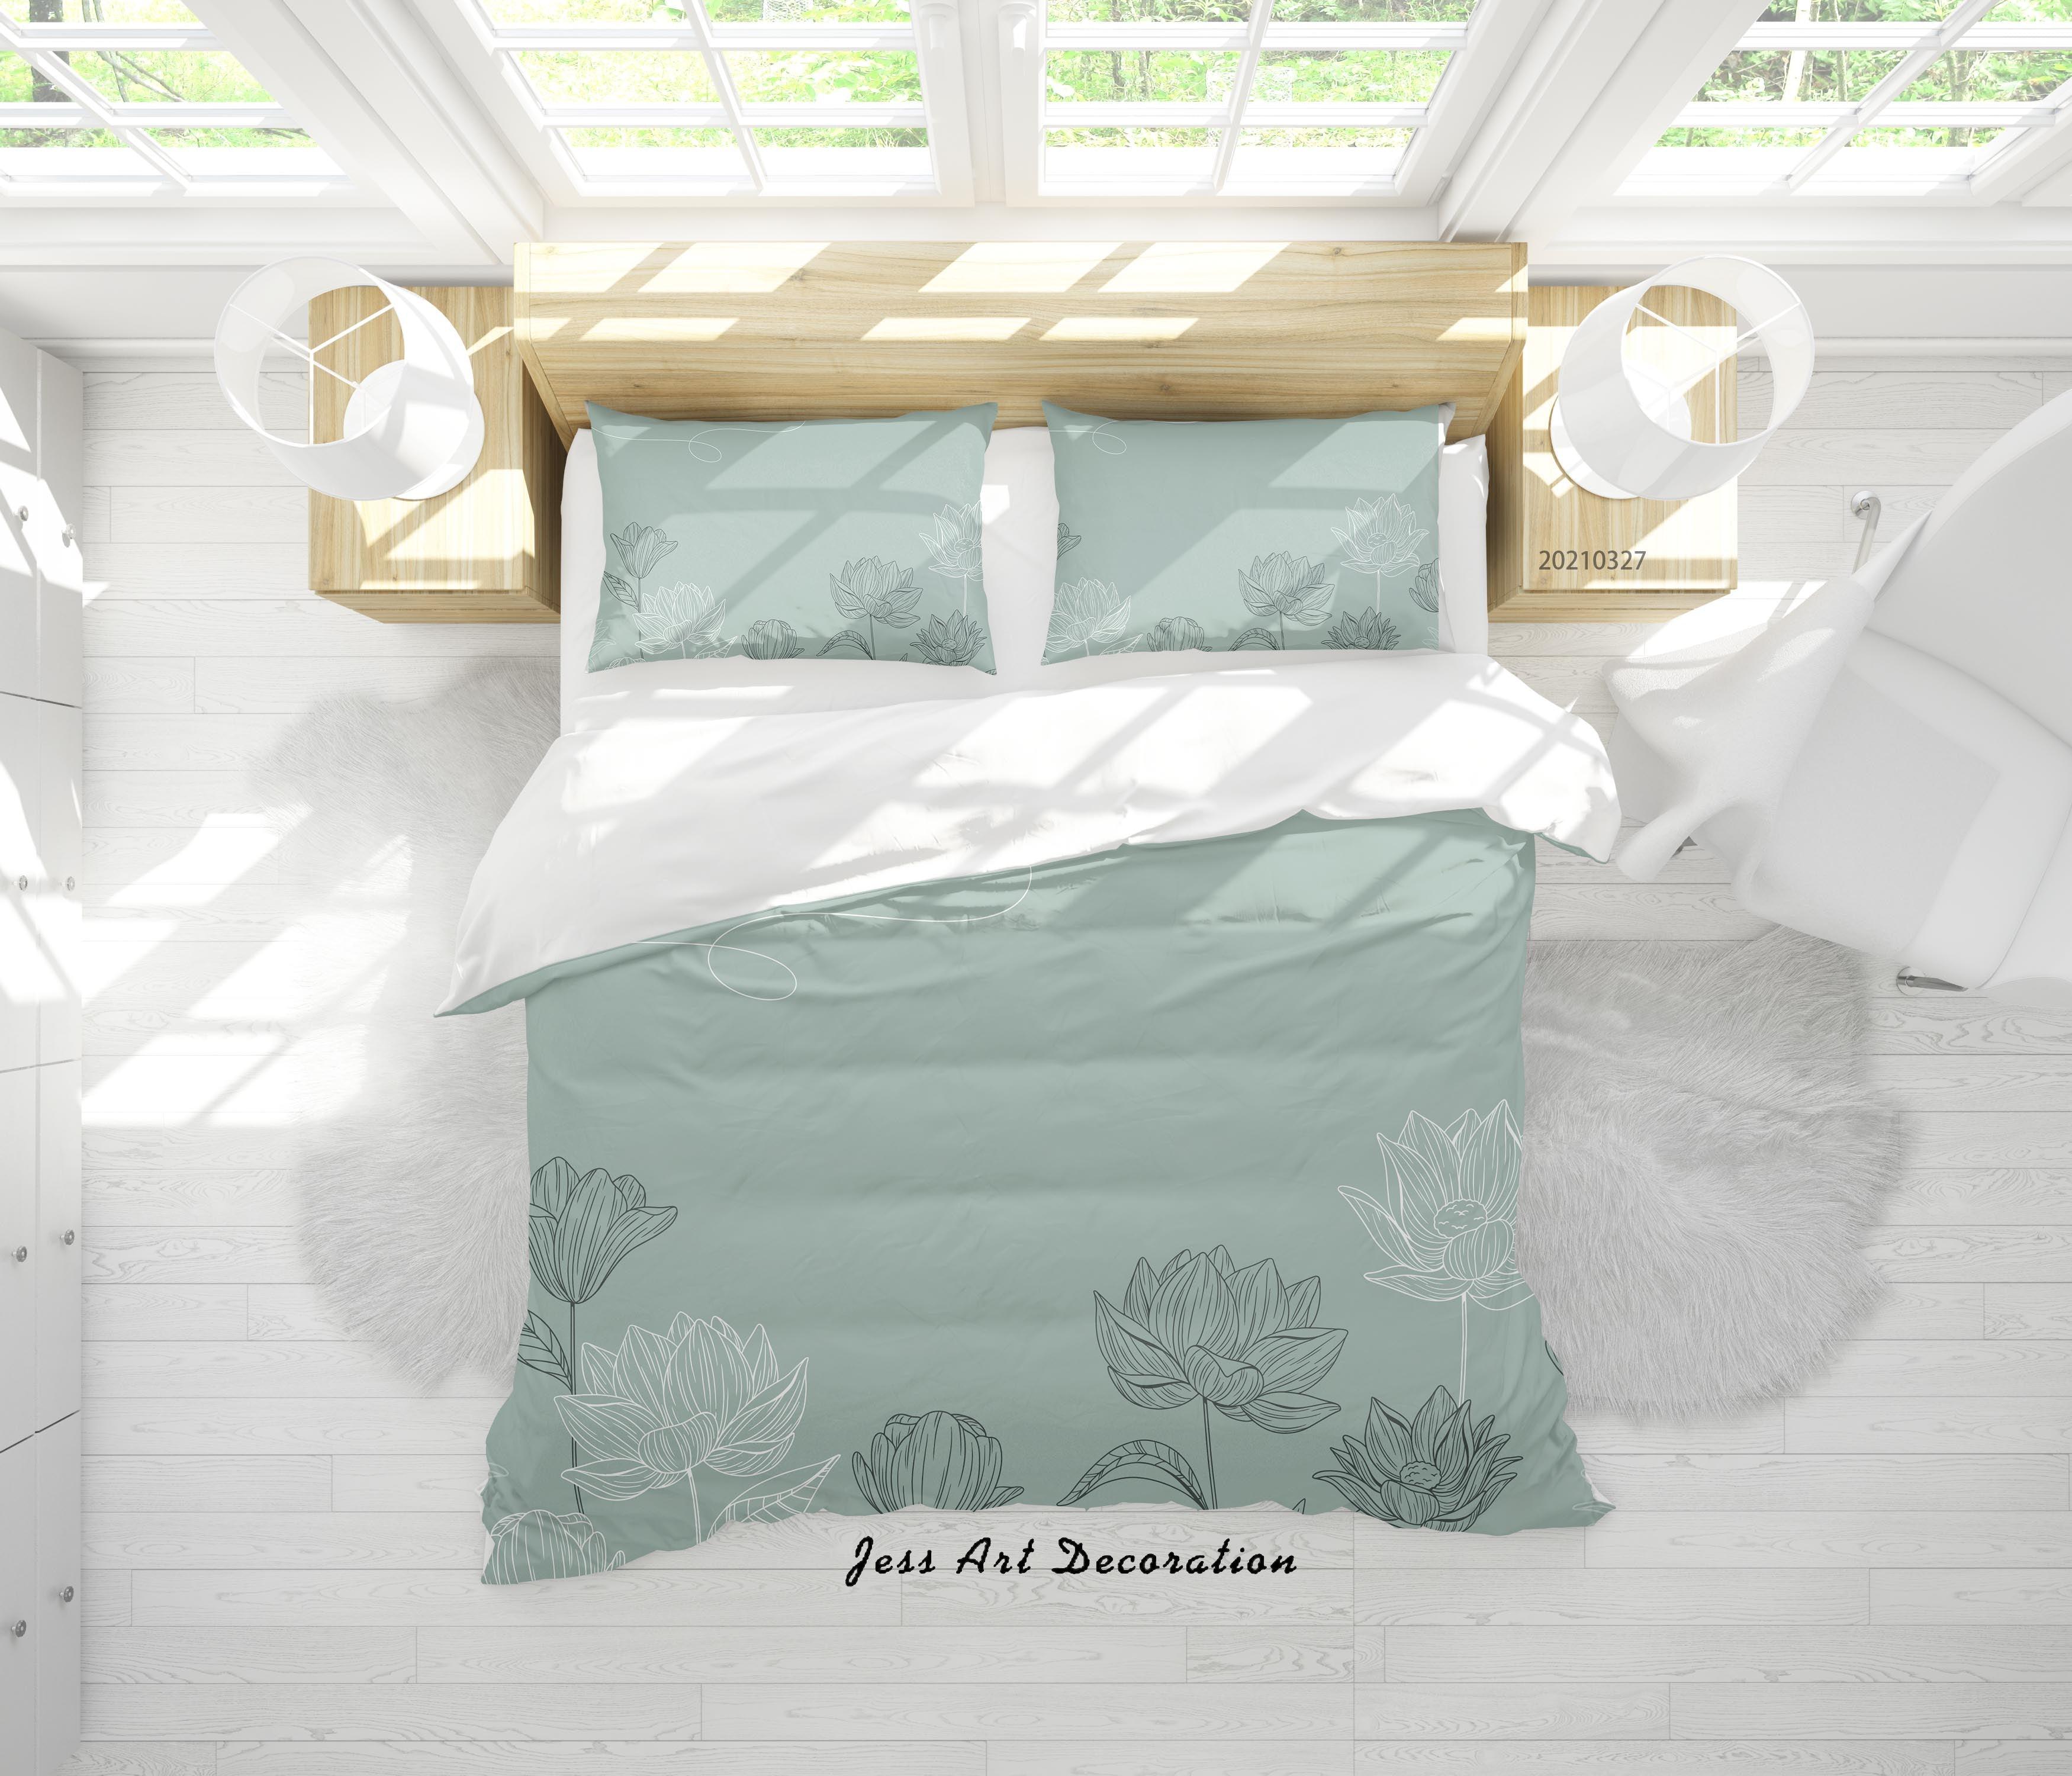 3D Watercolor Floral Pattern Quilt Cover Set Bedding Set Duvet Cover Pillowcases 49- Jess Art Decoration